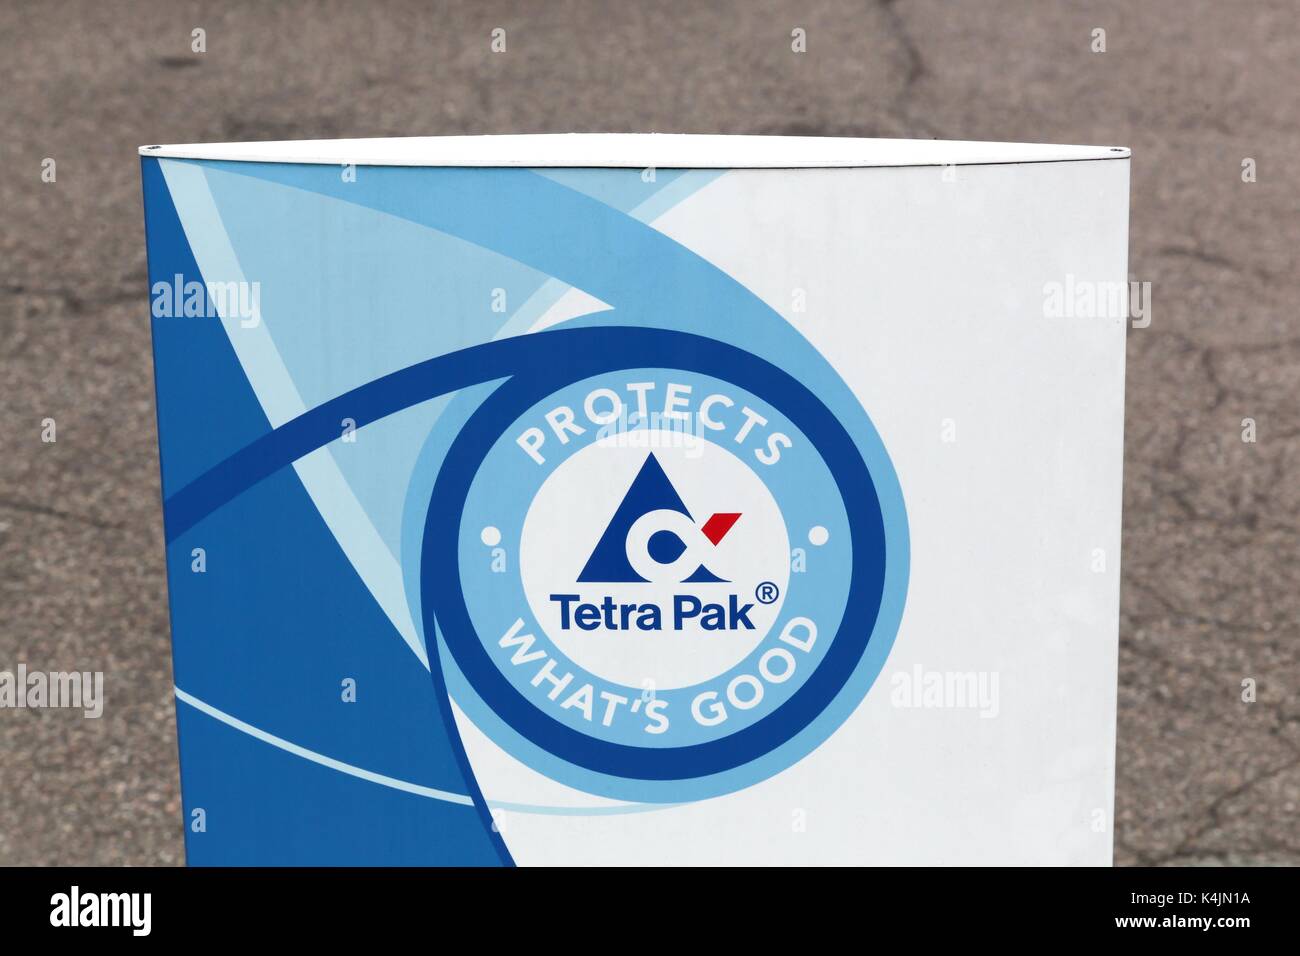 Viby, Danemark - août 19, 2017 : le logo de Tetra Pak tetra pak. est une entreprise de transformation et d'emballage de produits alimentaires d'origine suédoise Banque D'Images